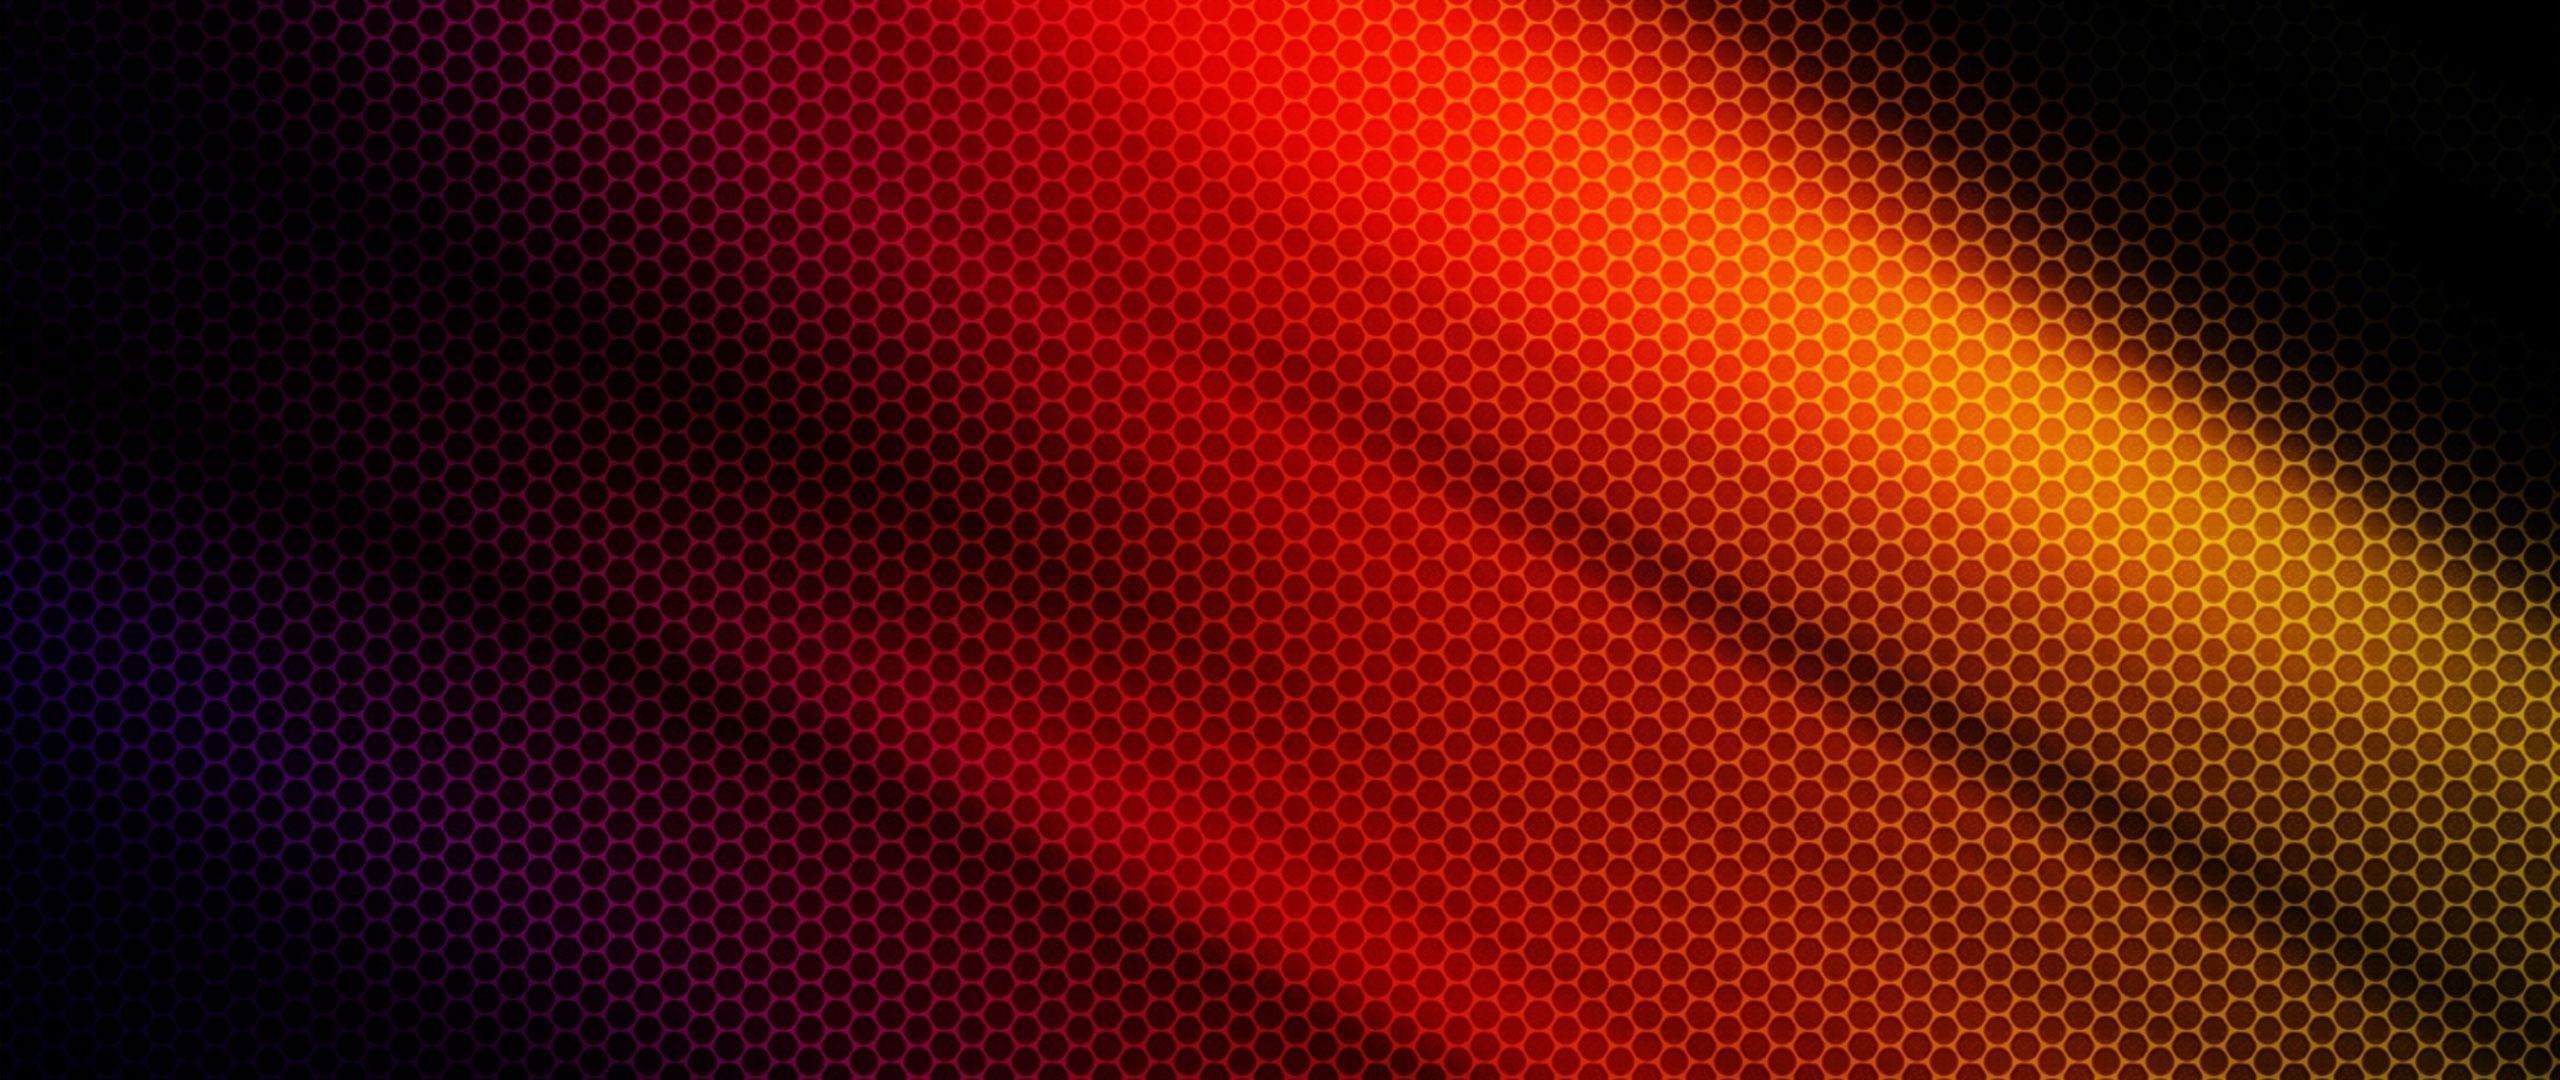 2560x1080 Download Wallpaper  Net, Color, Background, Dark .